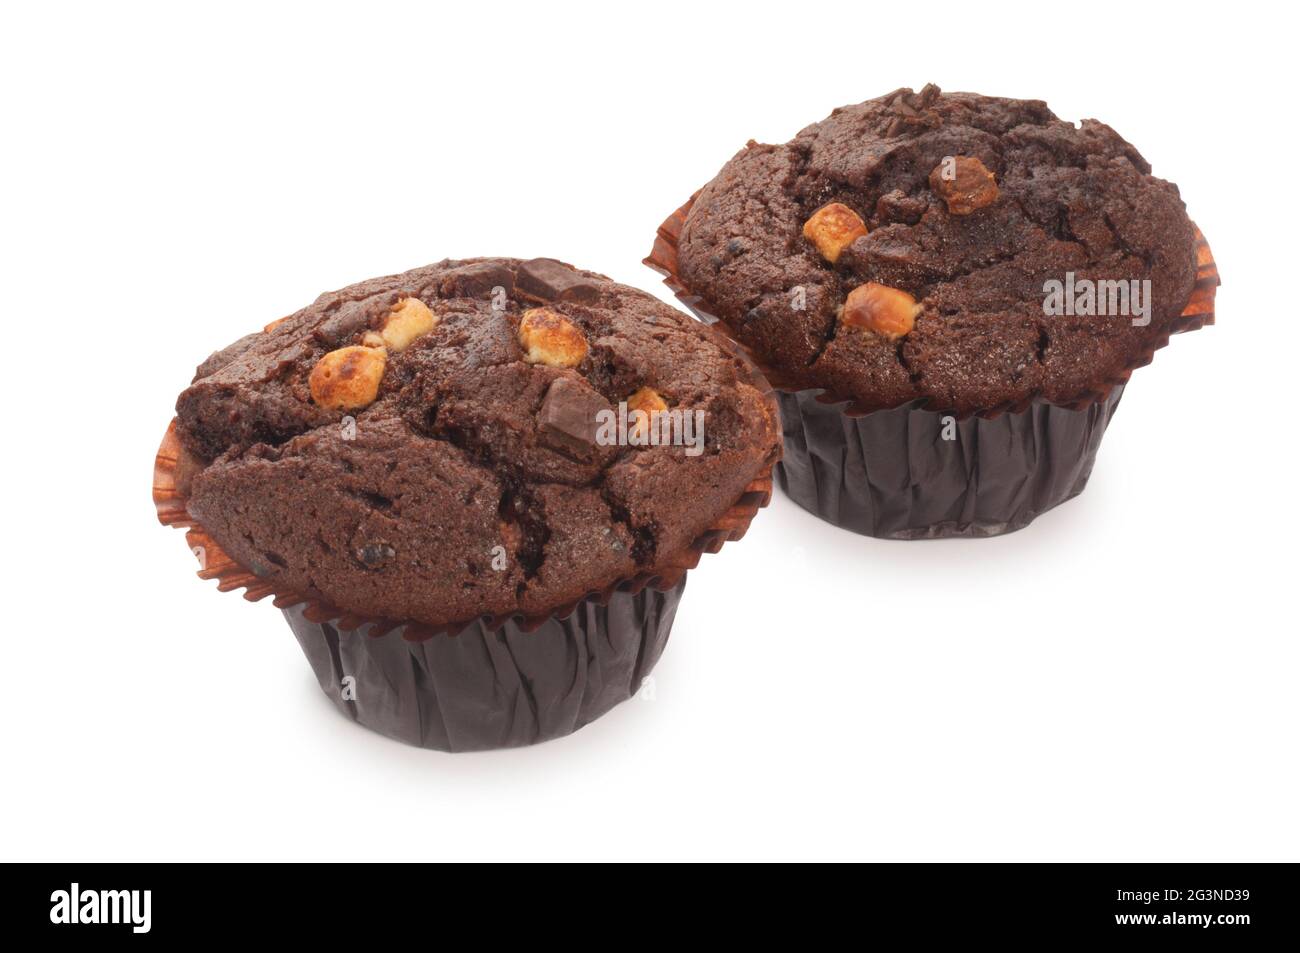 Studioaufnahme eines Muffins mit Schokoladensplittern, der vor einem weißen Hintergrund ausgeschnitten wurde - John Gollop Stockfoto